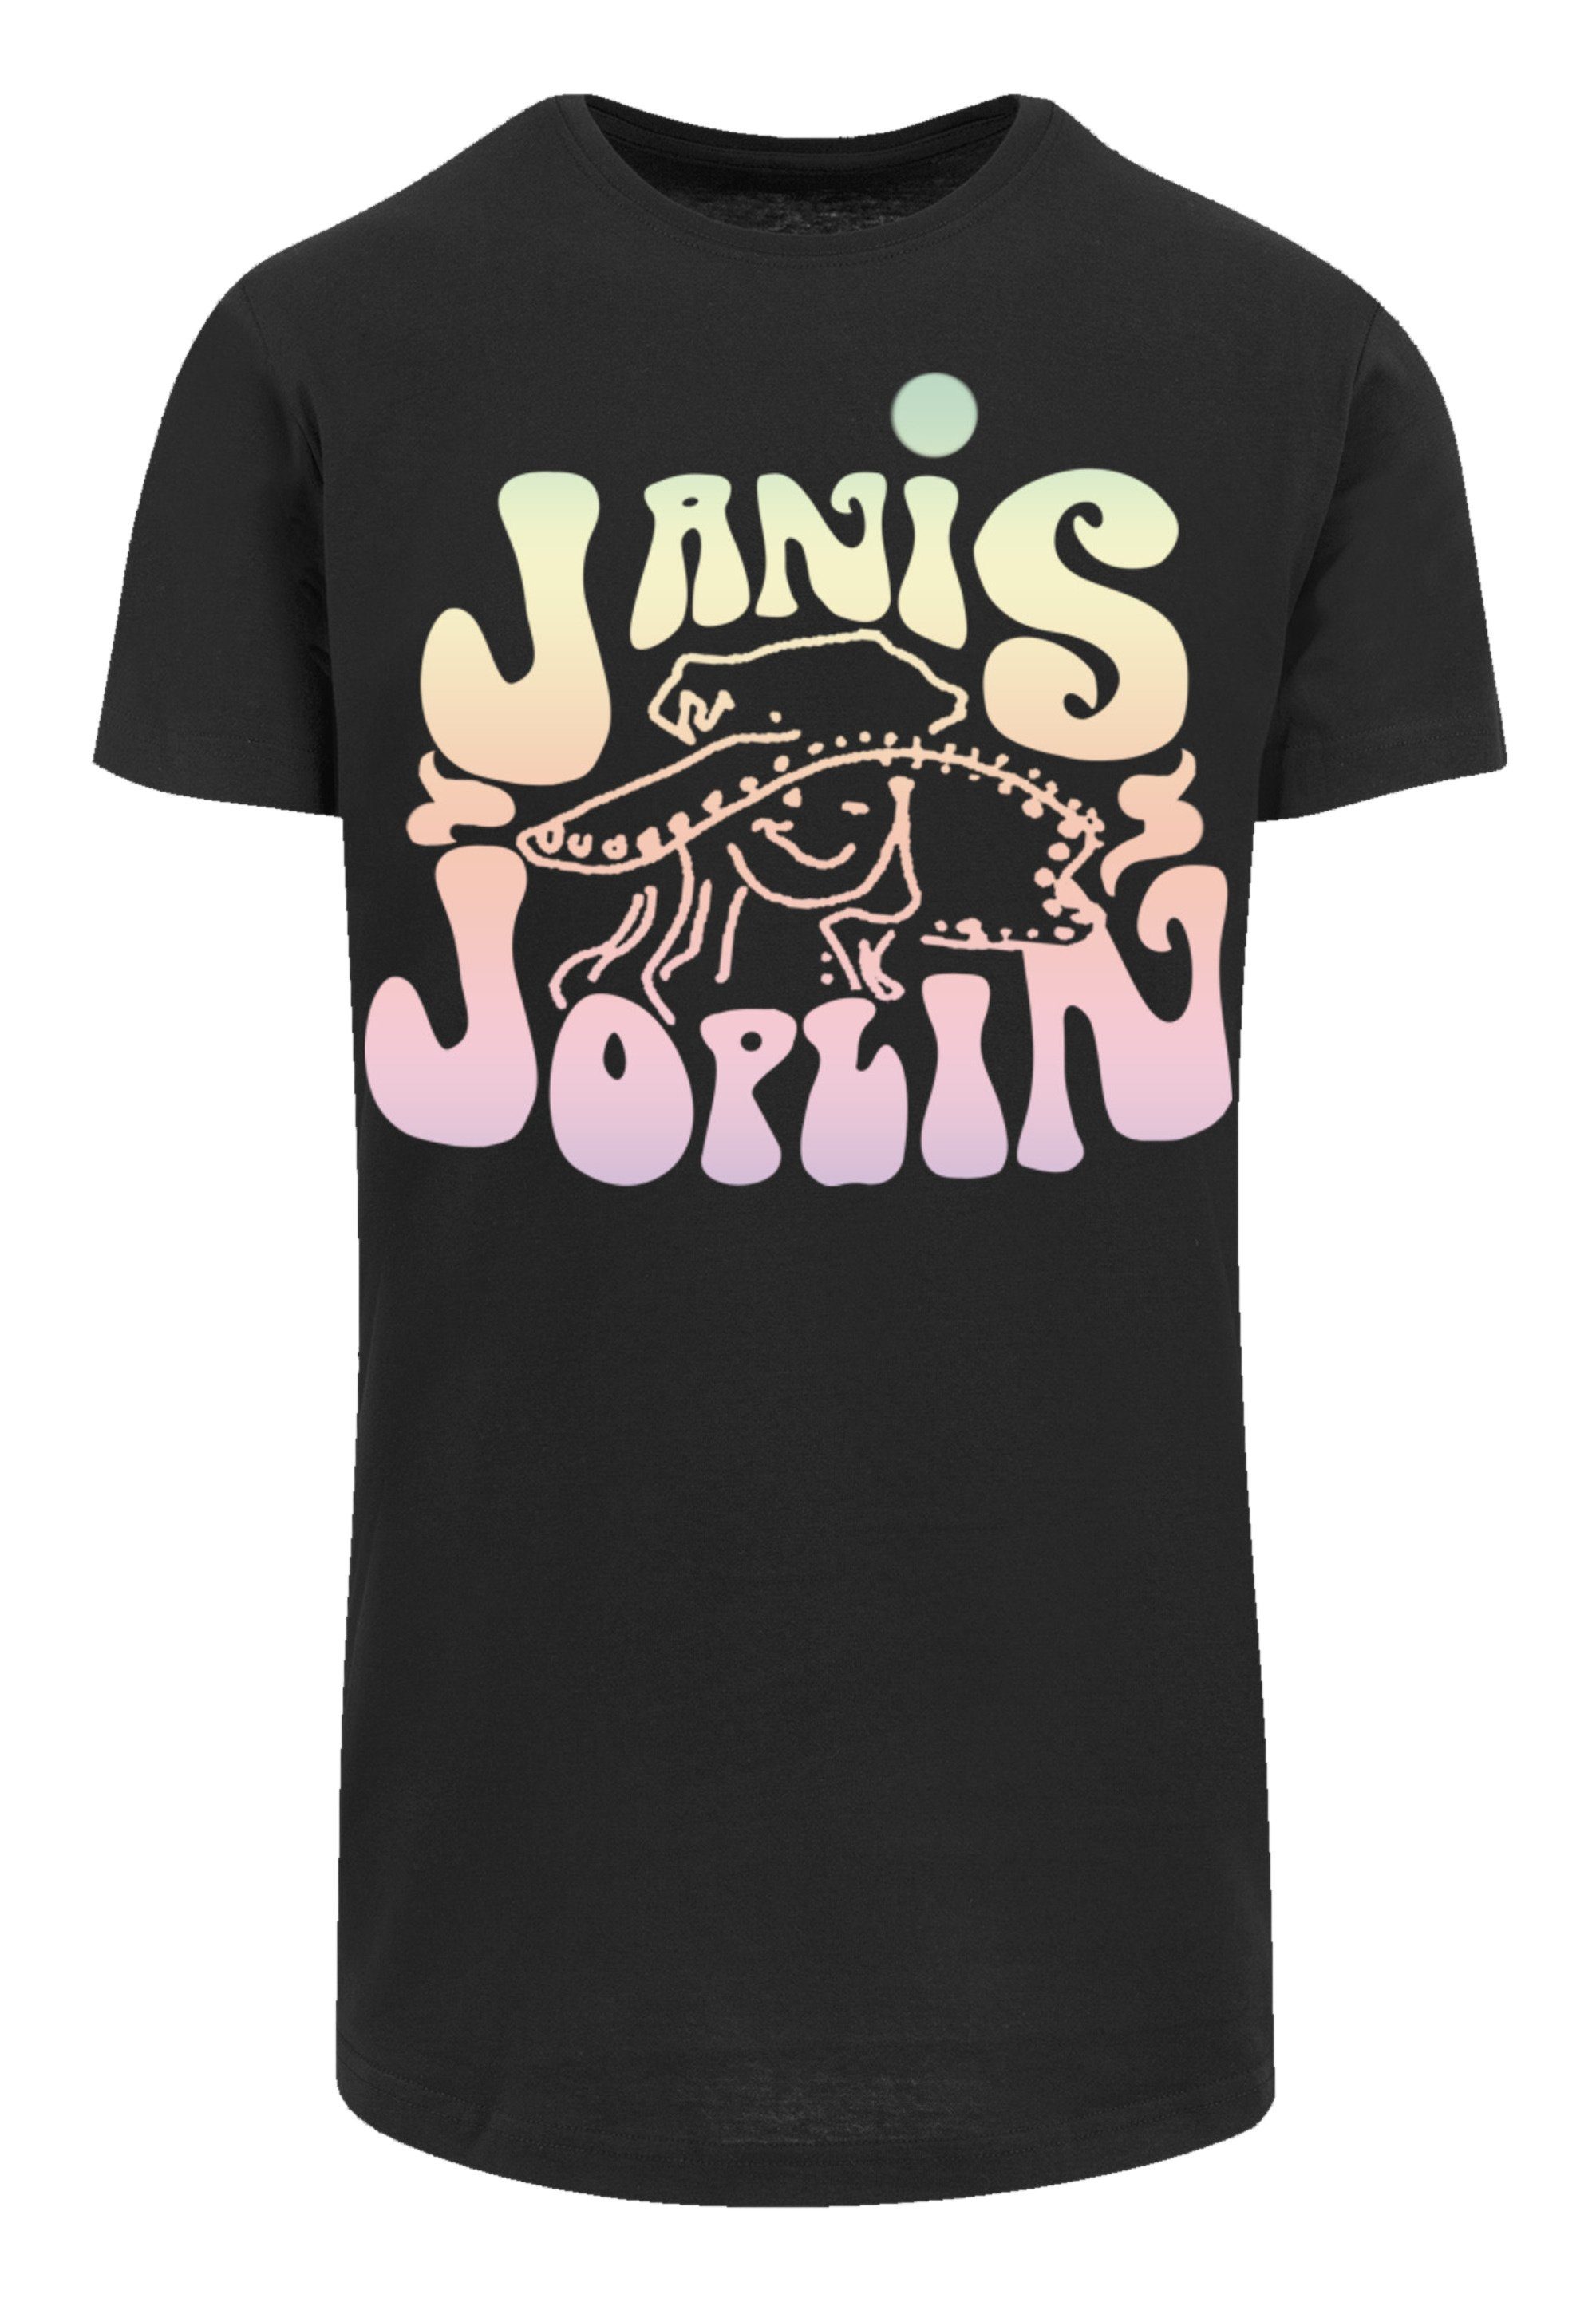 PLUS cm Pastel Joplin groß Das 180 T-Shirt Logo Model Print, ist Größe SIZE trägt Janis M F4NT4STIC und